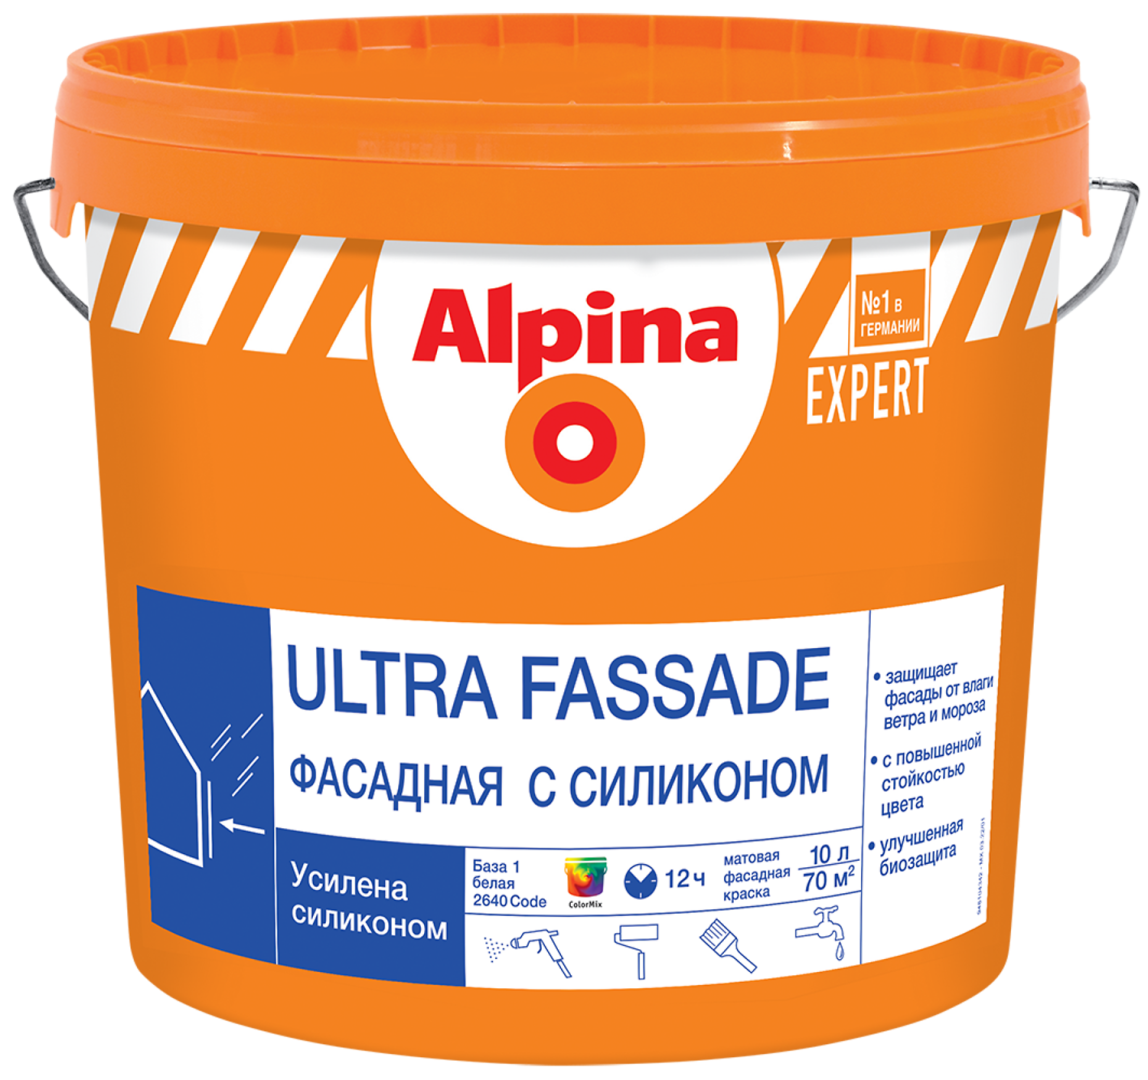 УД_ALPINA EXPERT ULTRA FASSADE краска для наружных работ, фасадная с силиконом, База 1 (10л) АКЦИЯ